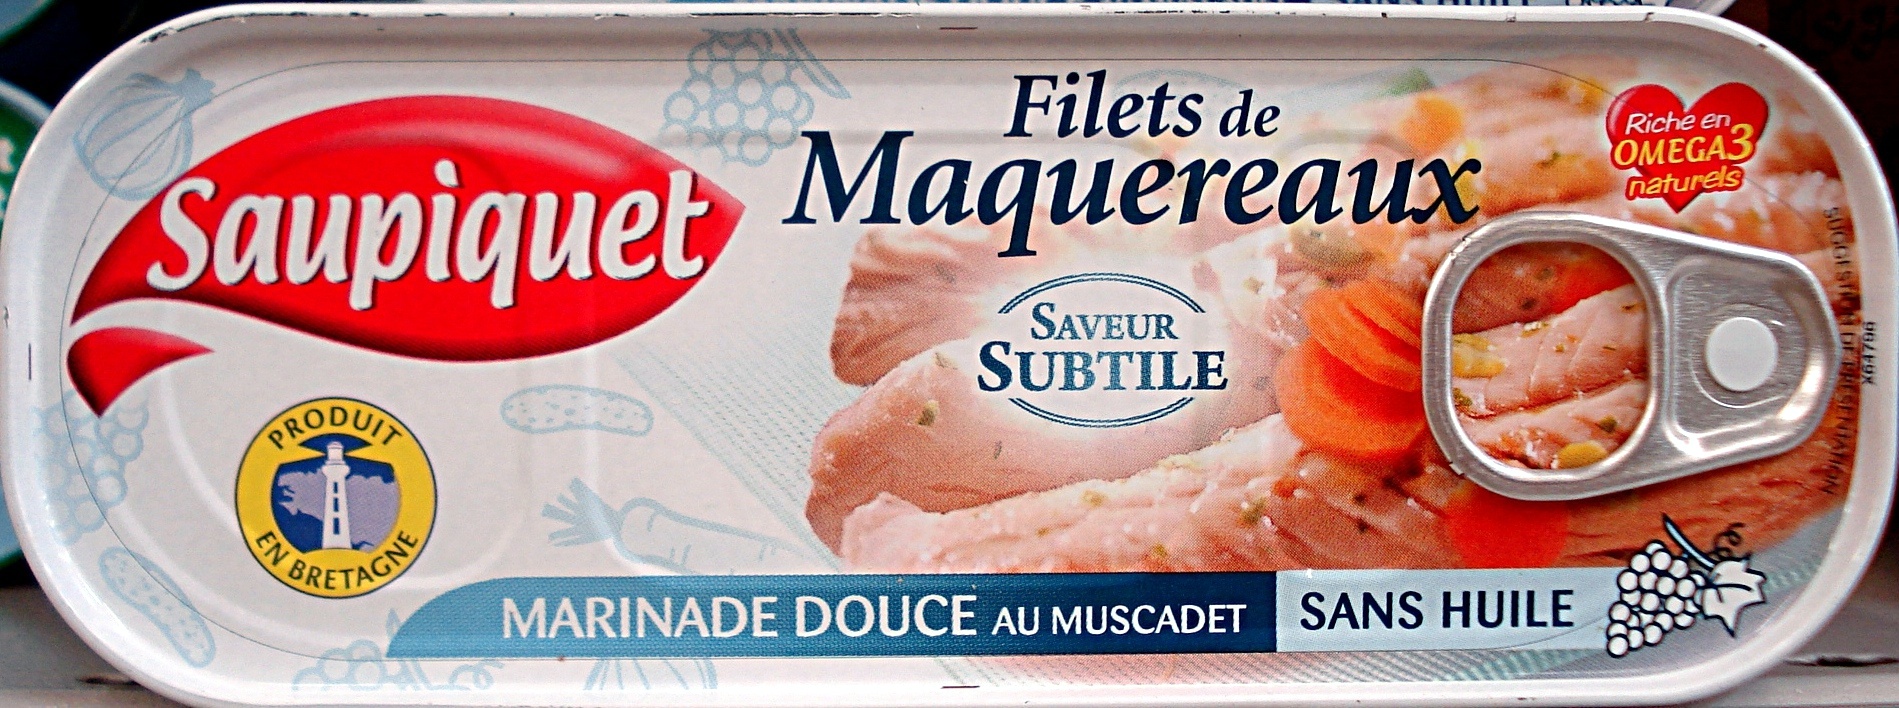 Filets de Maquereaux saveur subtile - Producto - fr